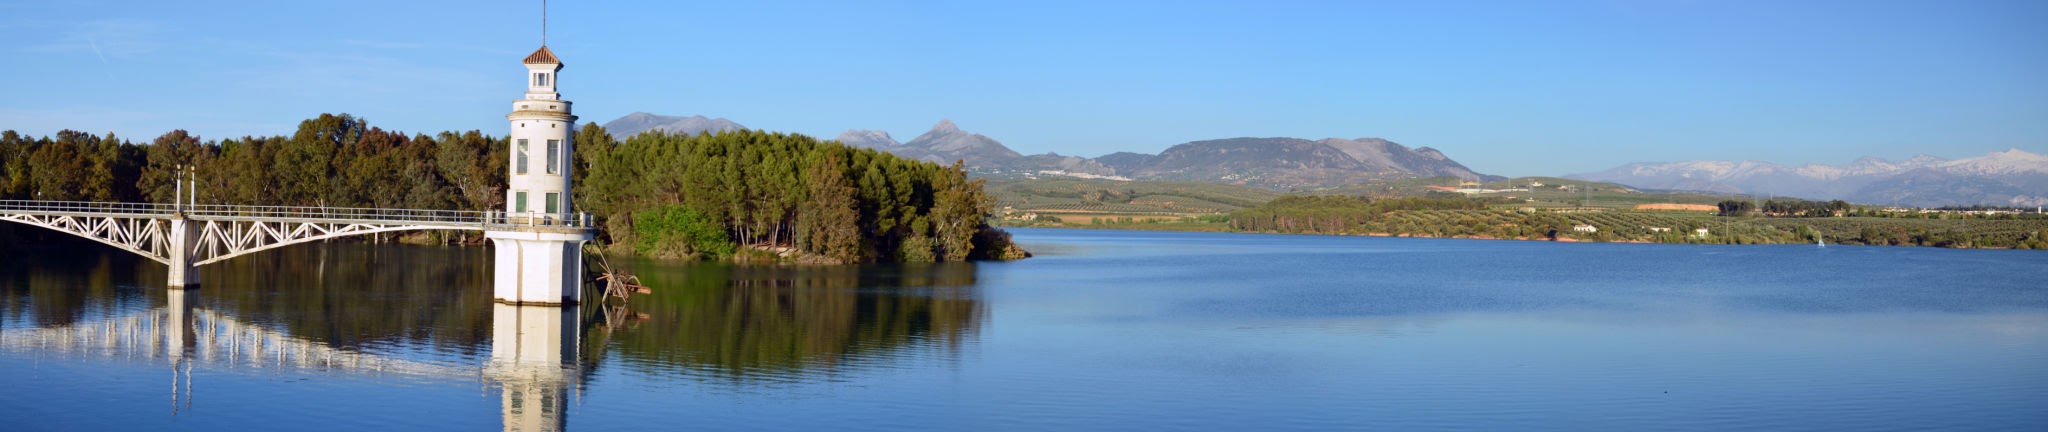 Cubillas Reservoir, Pinos Puente